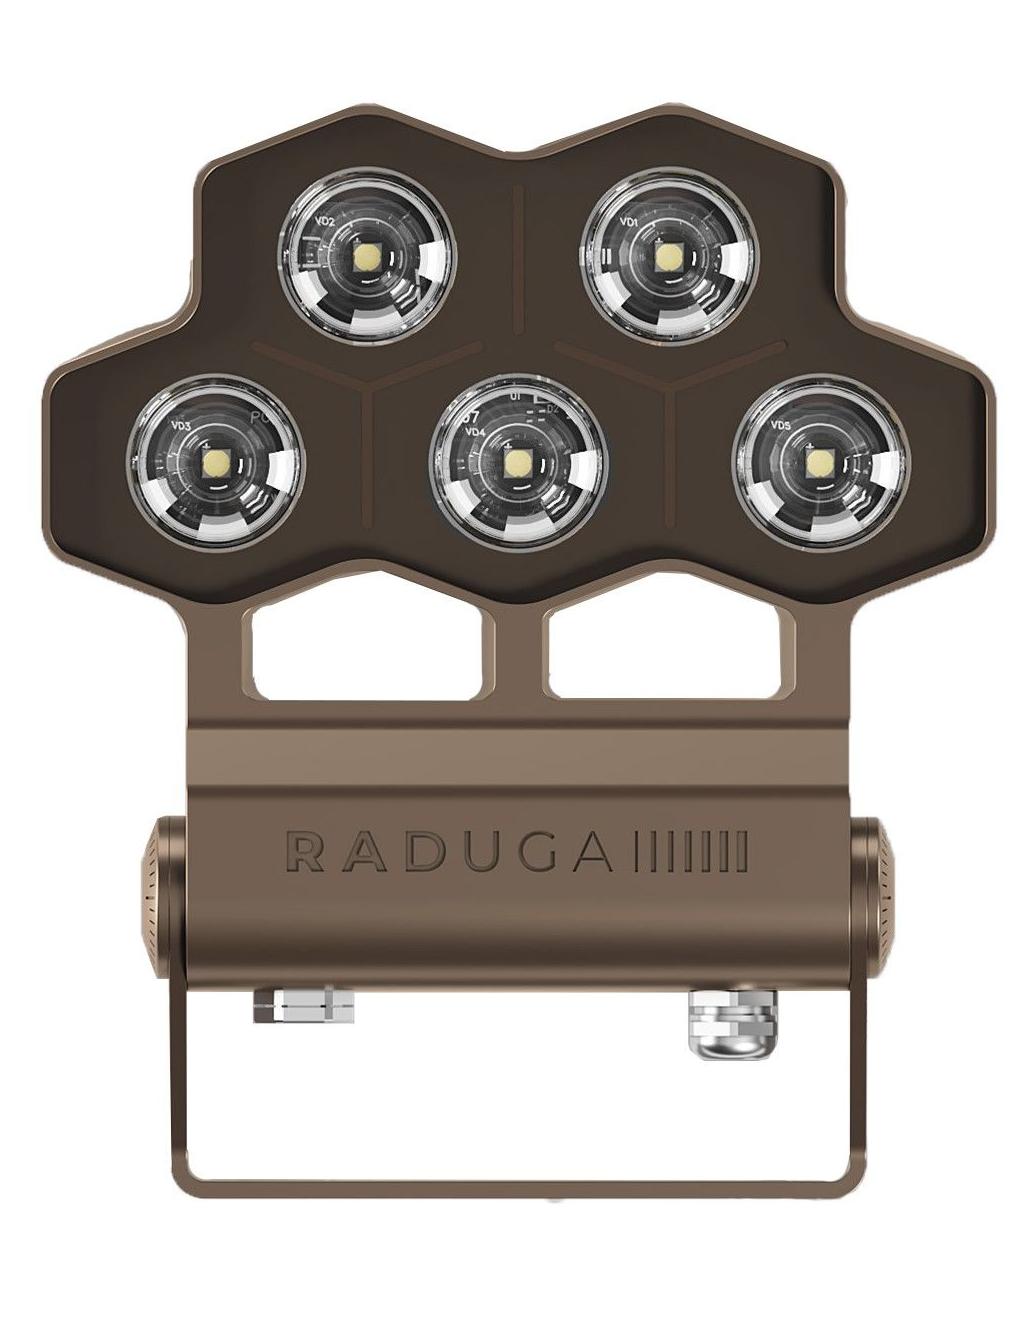 Купить прожектор светодиодный LED.  Прожектор архитектурный на фасад бренда RADUGA - Купить прожектор светодиодный LED.  Прожектор архитектурный на фасад бренда RADUGA